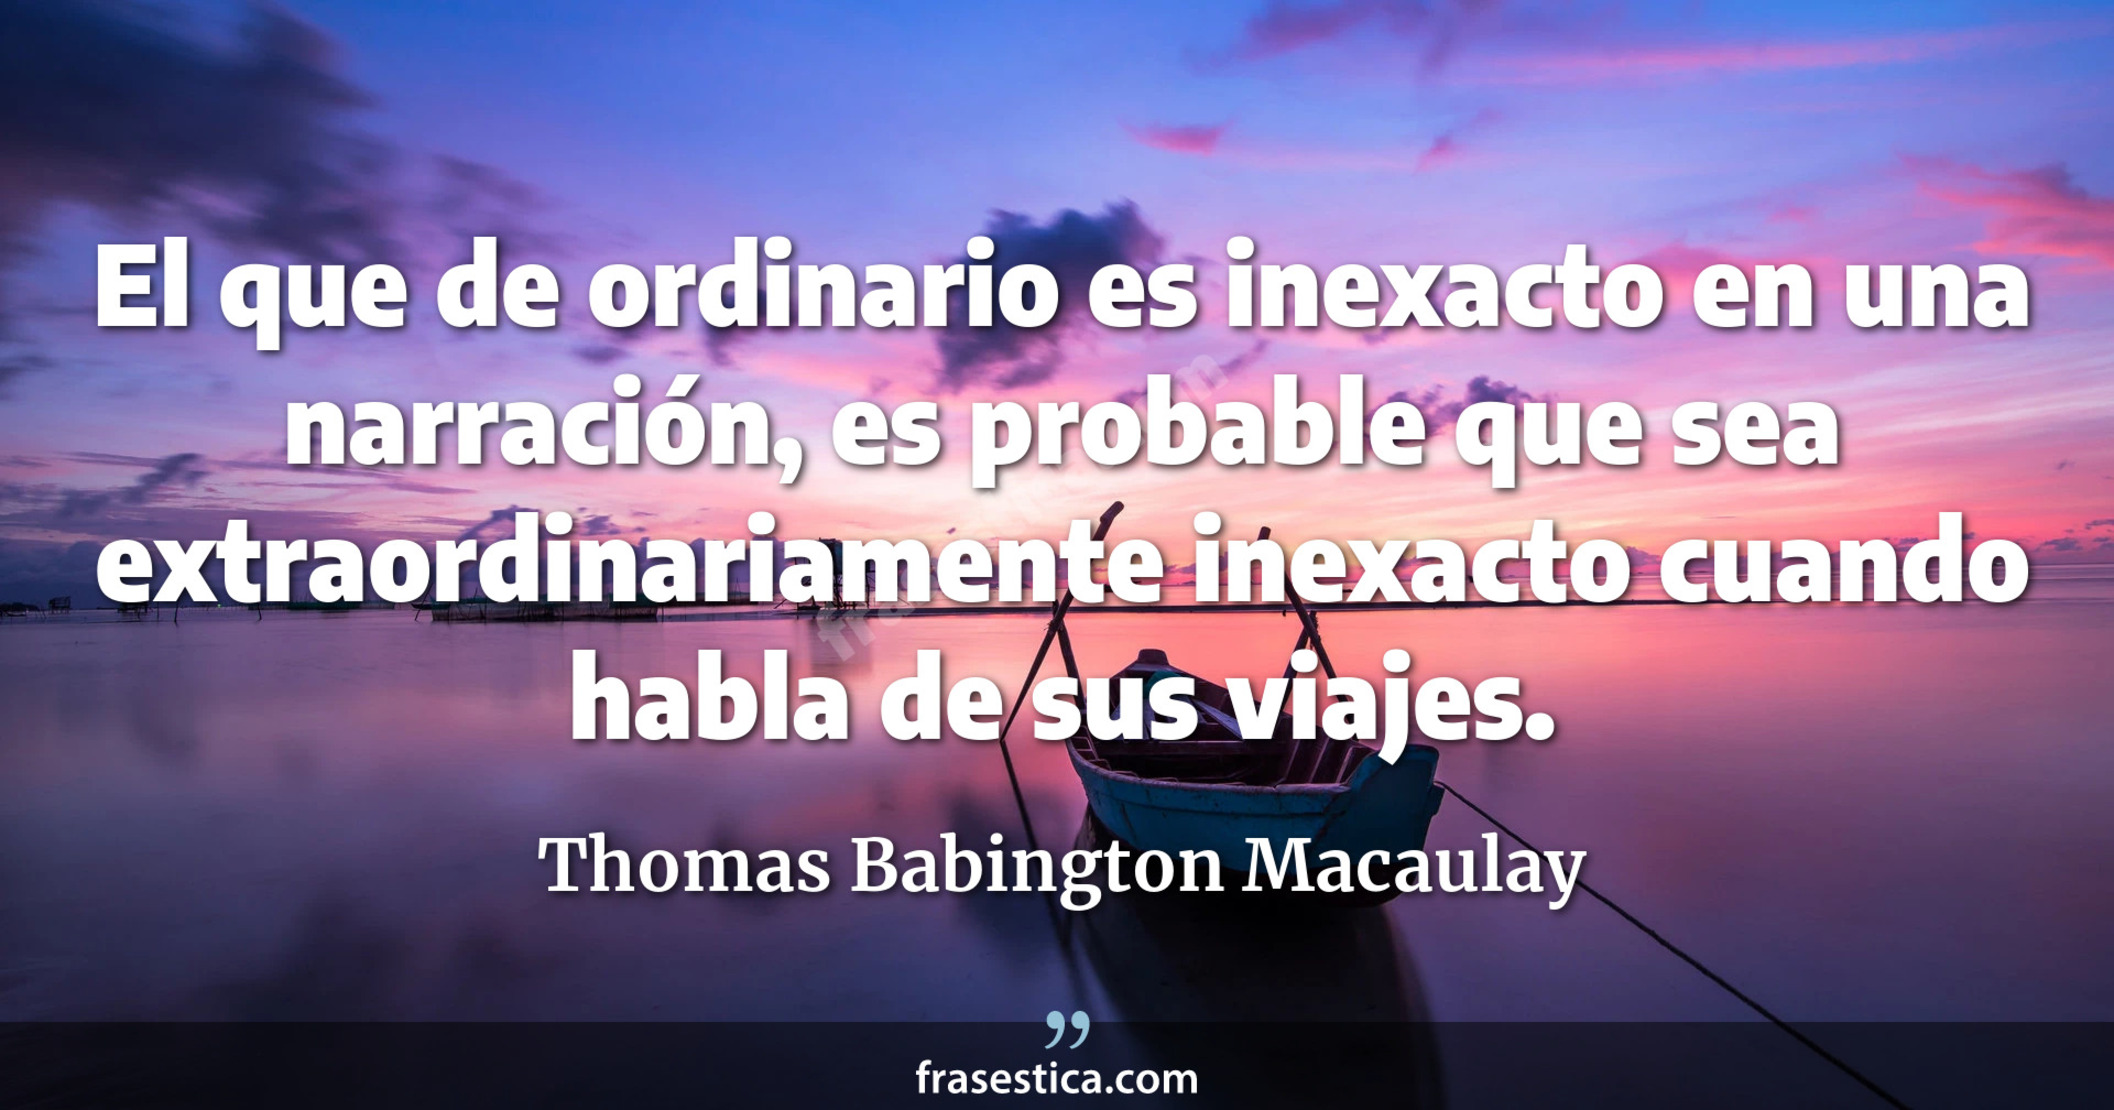 El que de ordinario es inexacto en una narración, es probable que sea extraordinariamente inexacto cuando habla de sus viajes. - Thomas Babington Macaulay